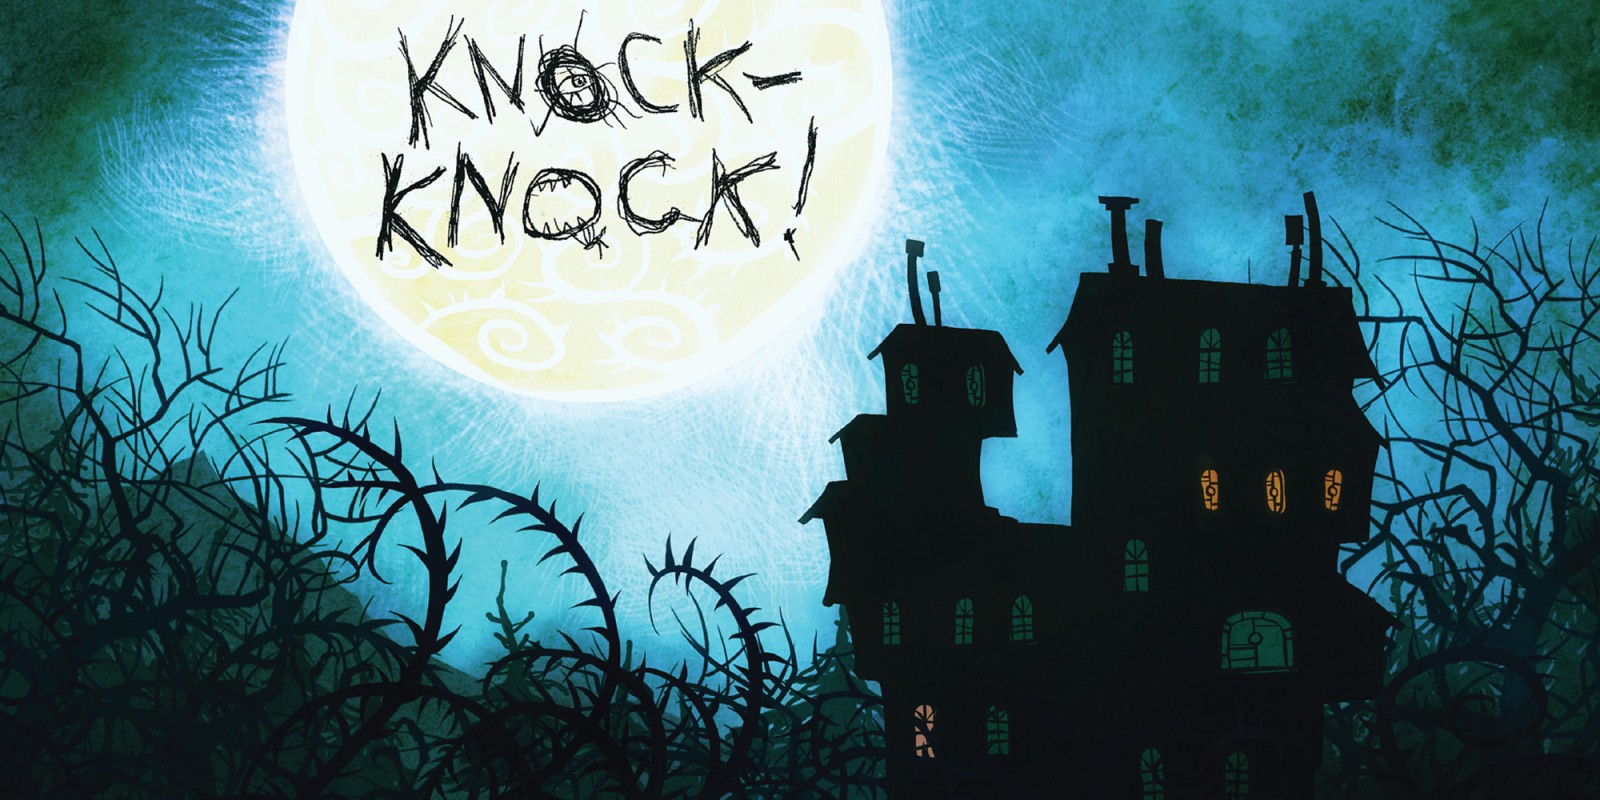 Knock-knock-knock mobile horror